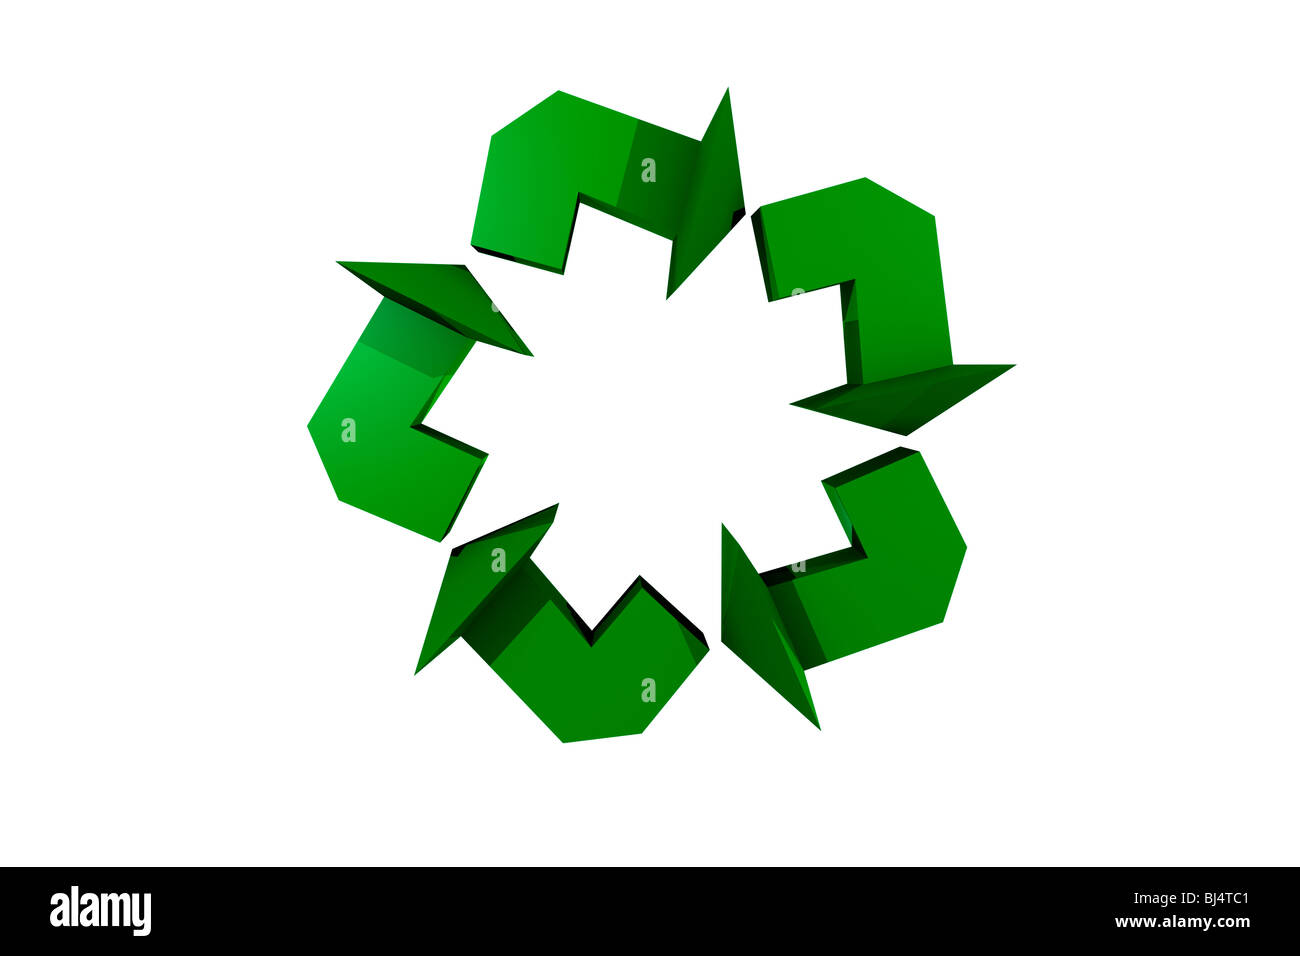 Symbole de recyclage, l'étoile à 5 grâce à la redondance des flèches sur fond blanc, vue de côté. Banque D'Images